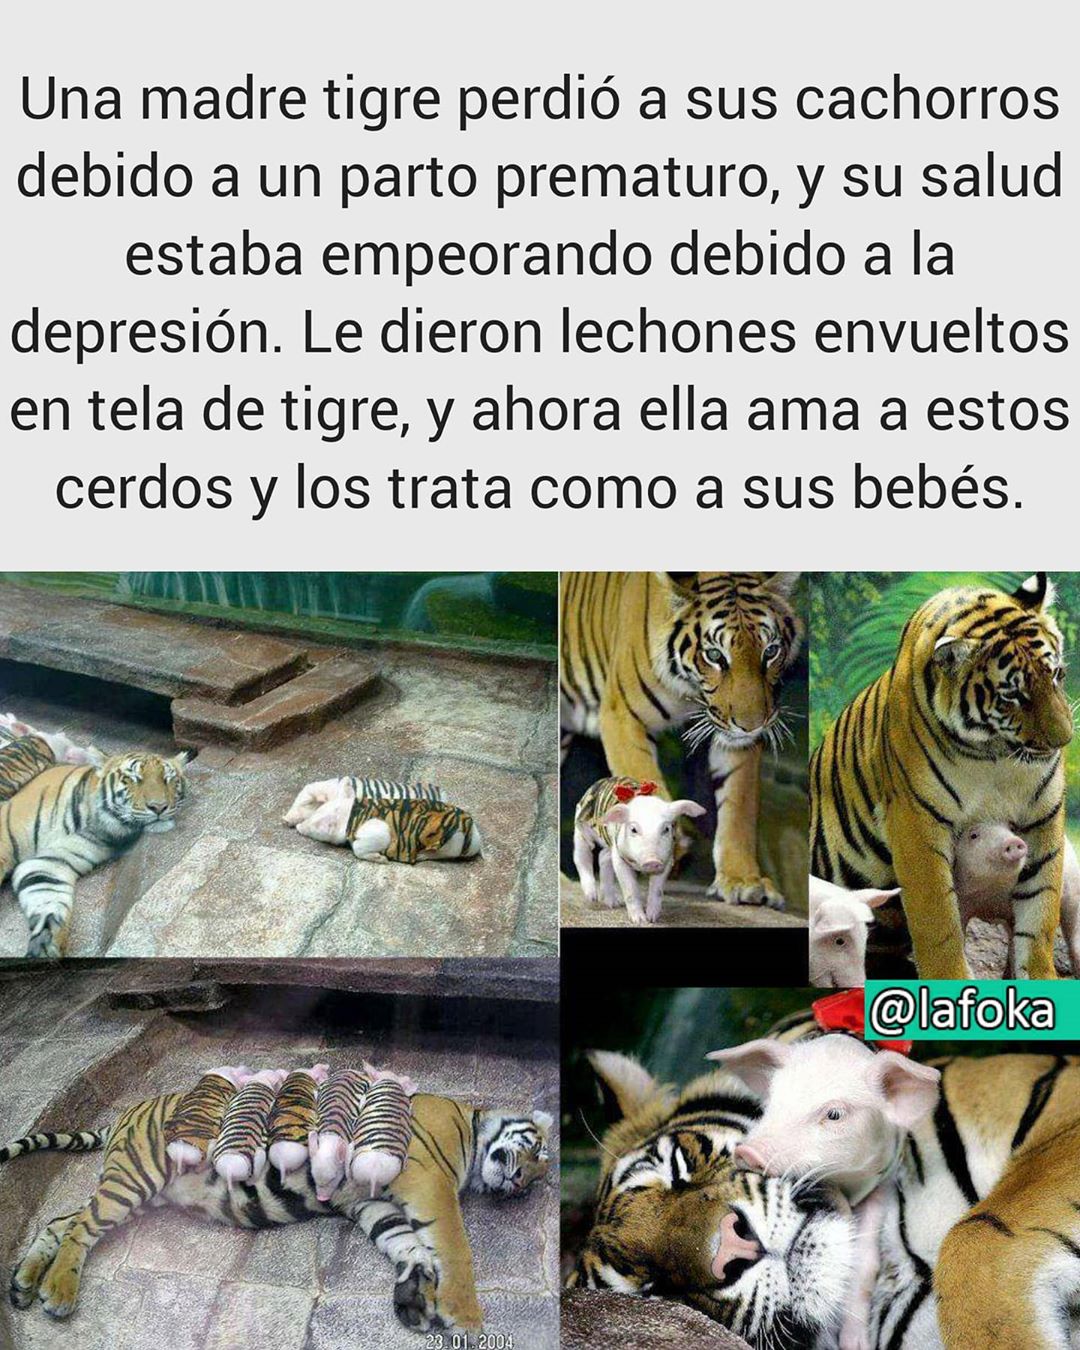 Una madre tigre perdió a sus cachorros debido a un parto prematuro, y su salud estaba empeorando debido a la depresión. Le dieron lechones envueltos en tela de tigre, y ahora ella ama a estos cerdos y los trata como a sus bebés.